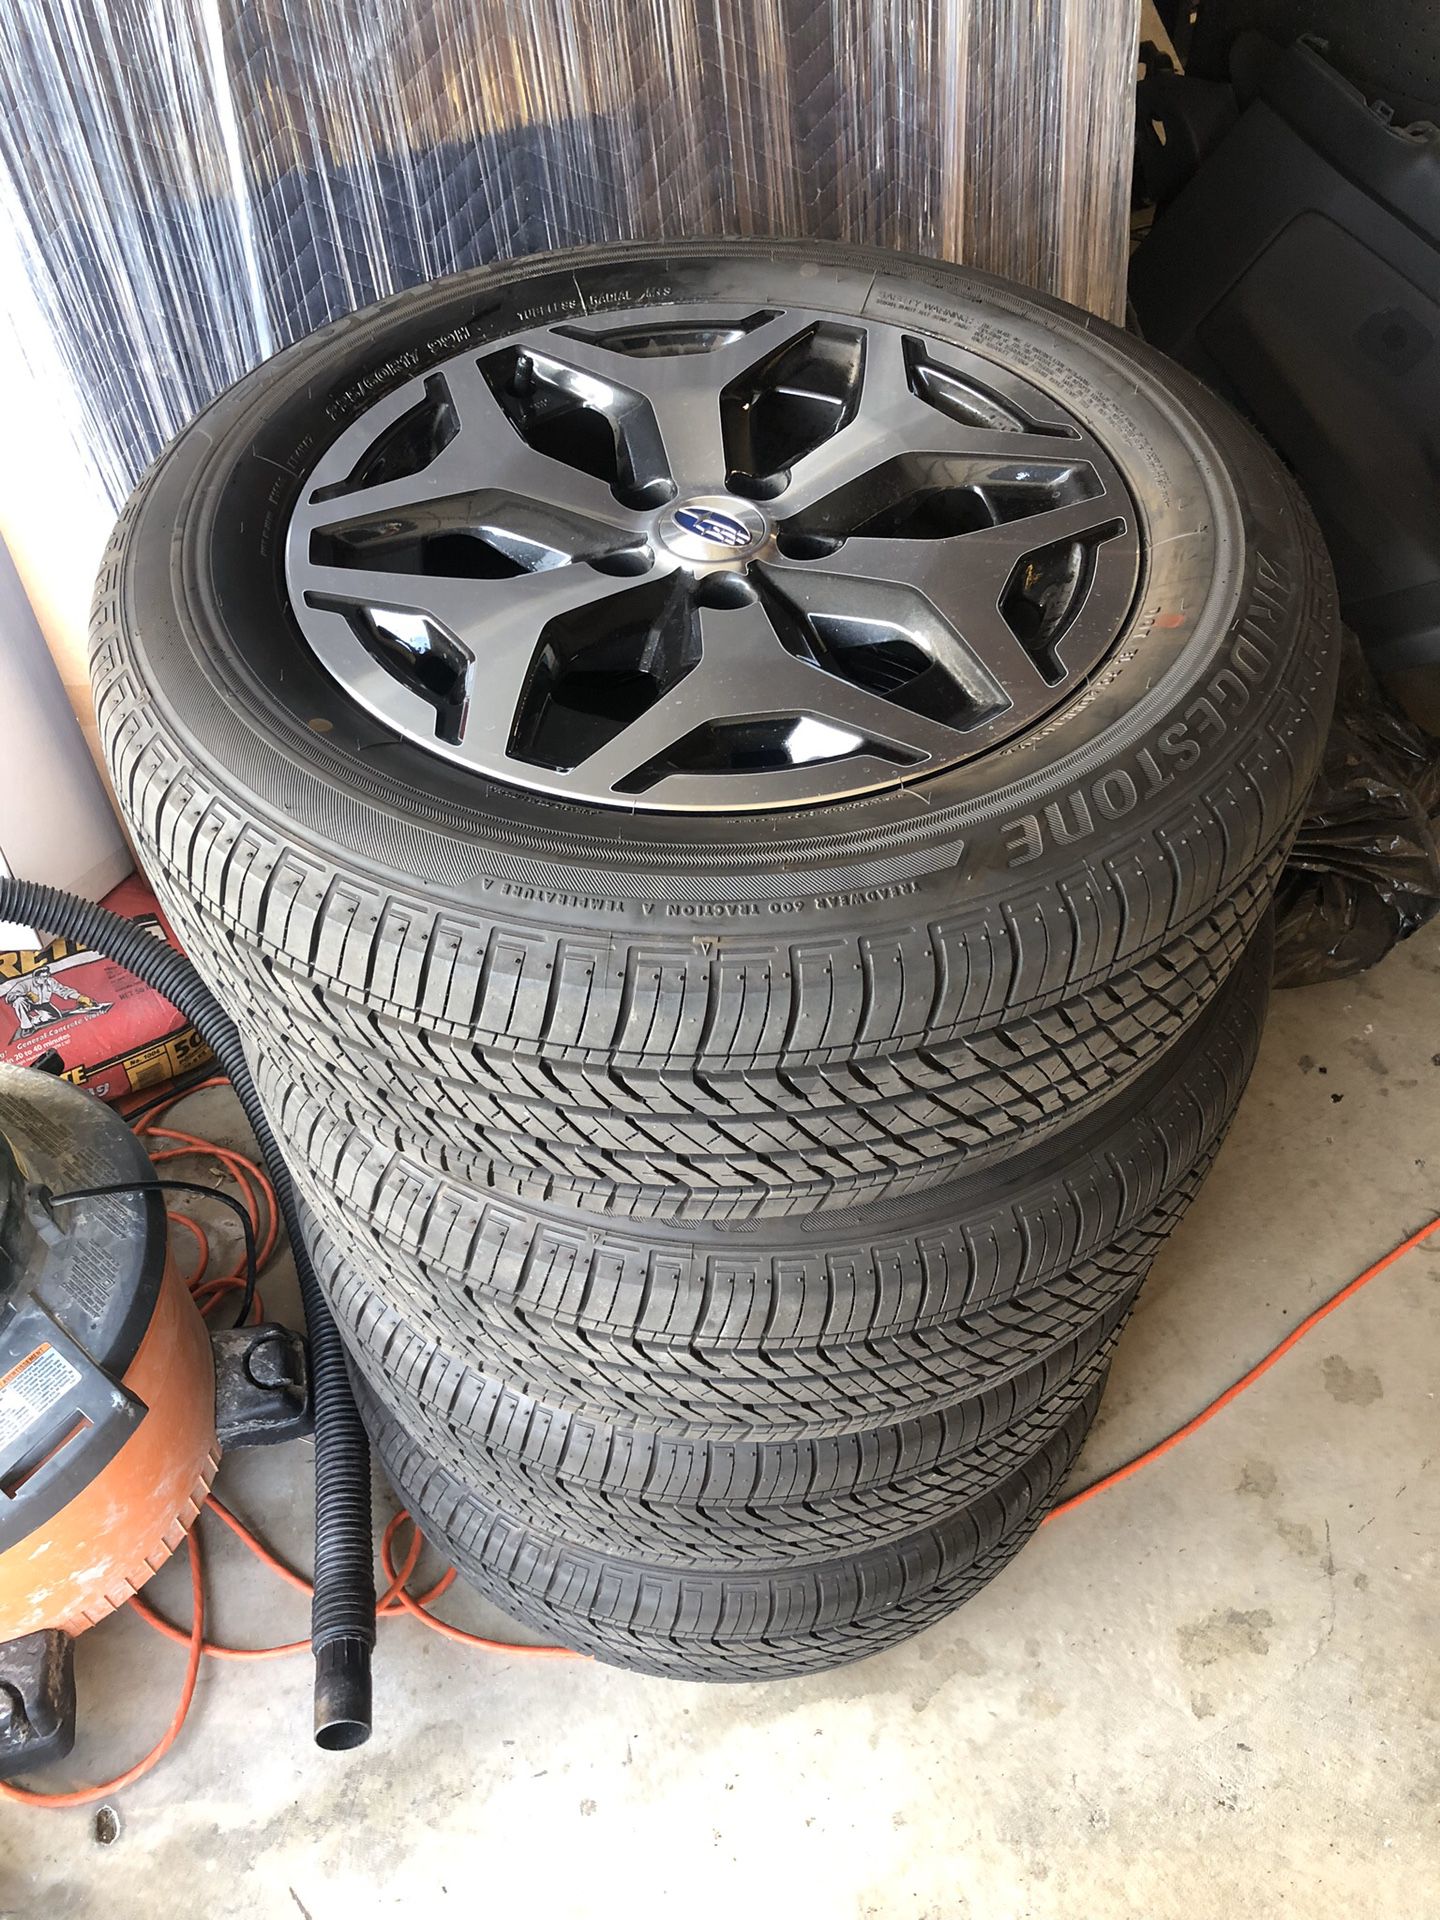 2019 Subaru Forester wheels 114.3x5